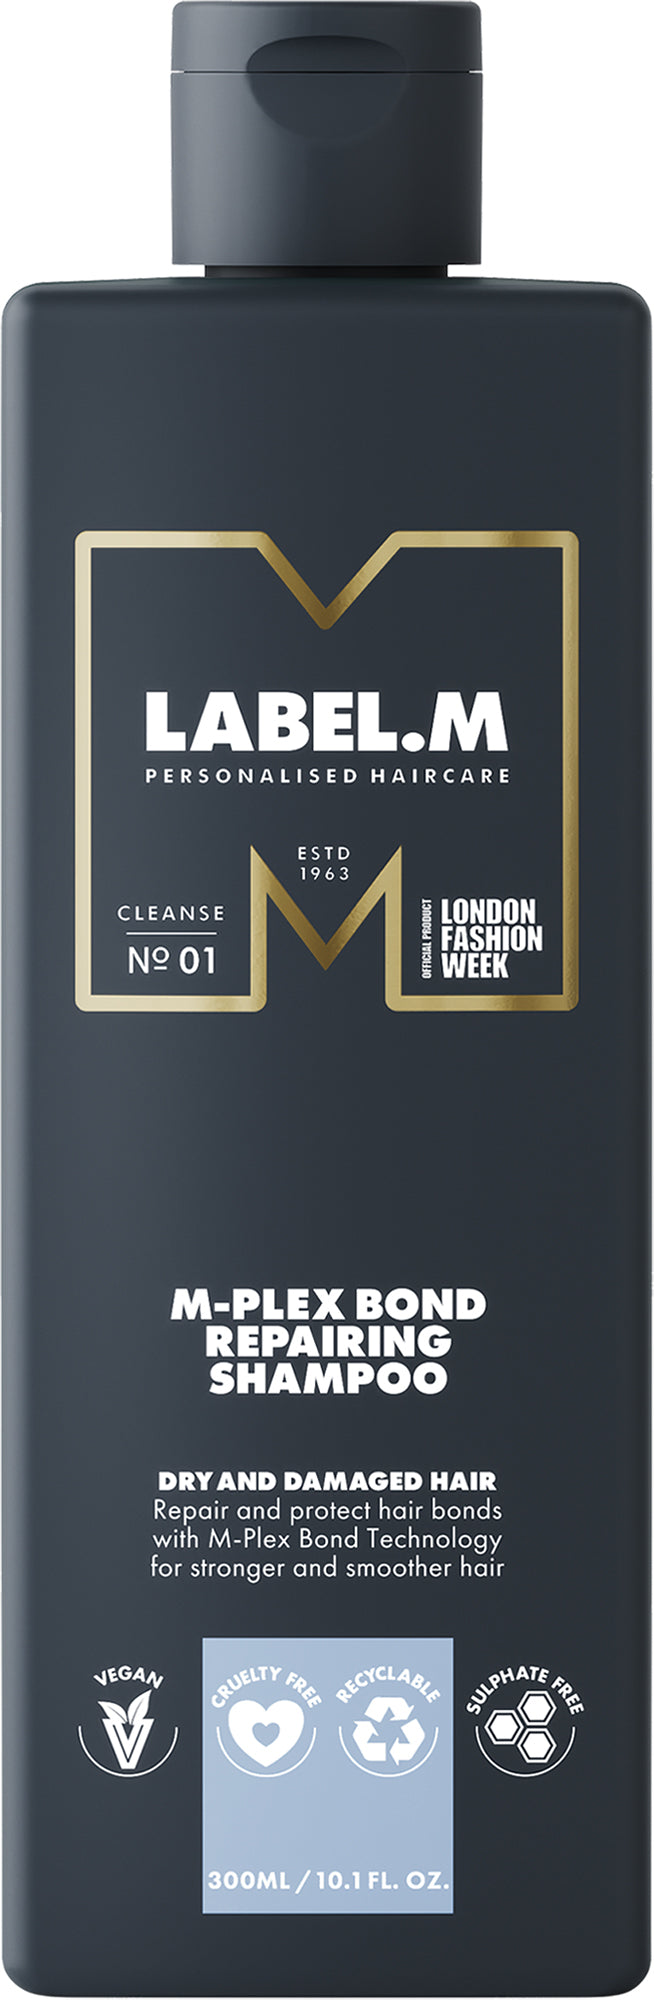 Label.m M-Plex Bond restorative shampoo 1000 ml